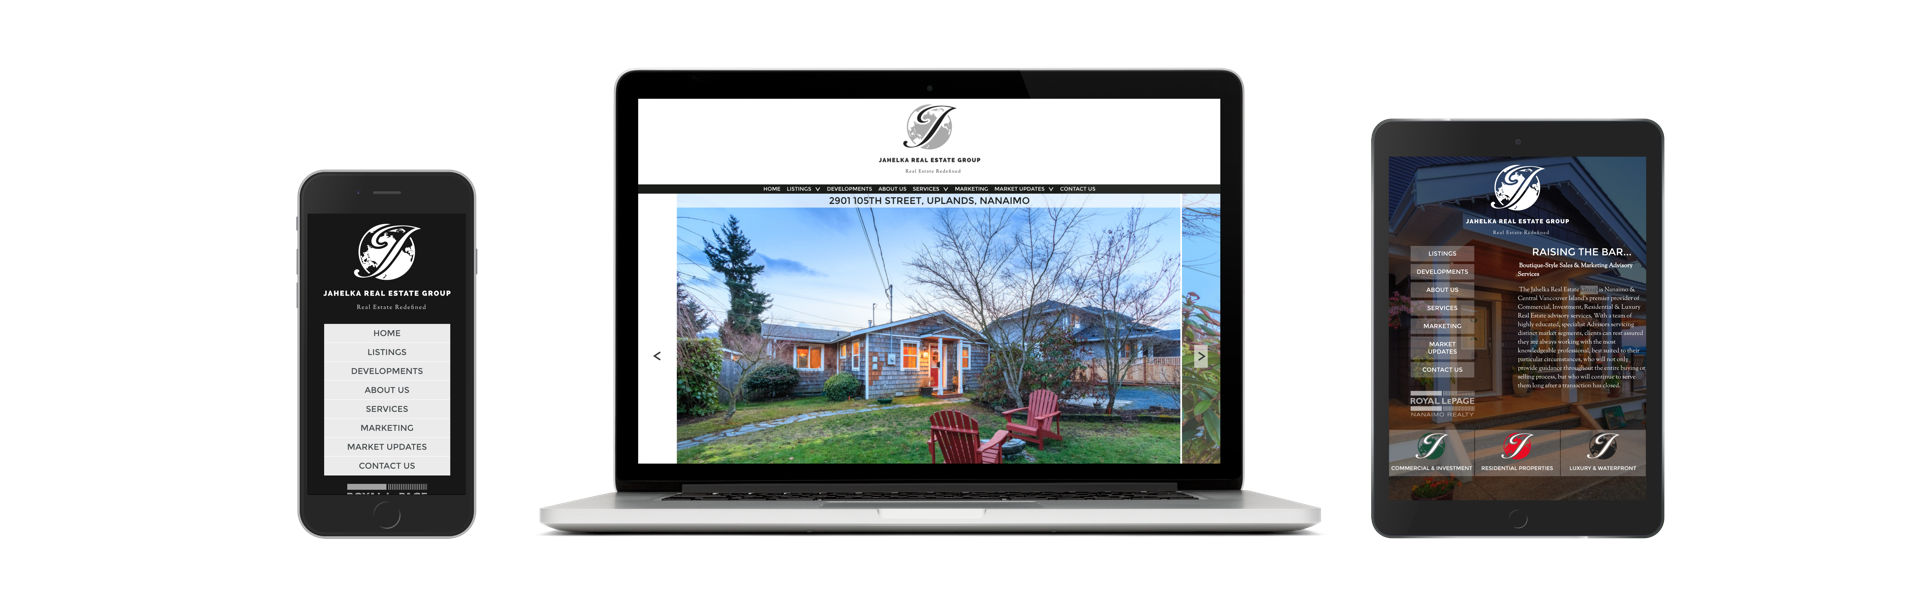 Jahelka Real Estate Group website design